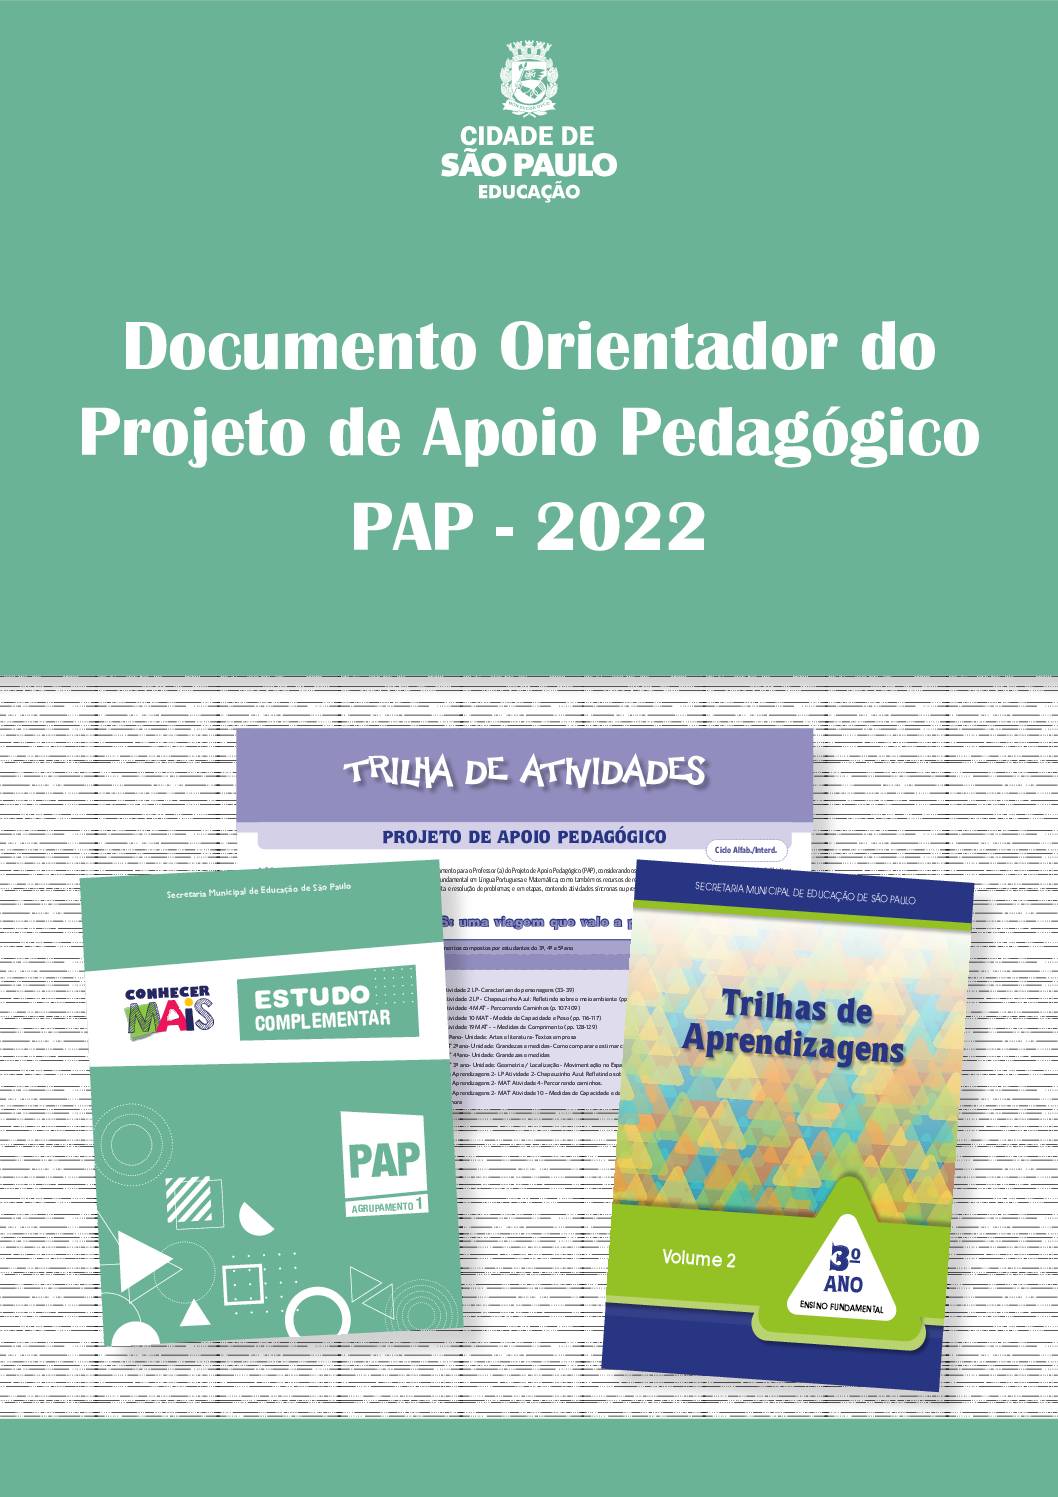 Documento publicado com o objetivo de orientar e potencializar as ações do Projeto de Apoio Pedagógico - PAP 2022, da Rede Municipal de Ensino de São Paulo, possibilitando a superação das dificuldades de aprendizagens de cada estudante.